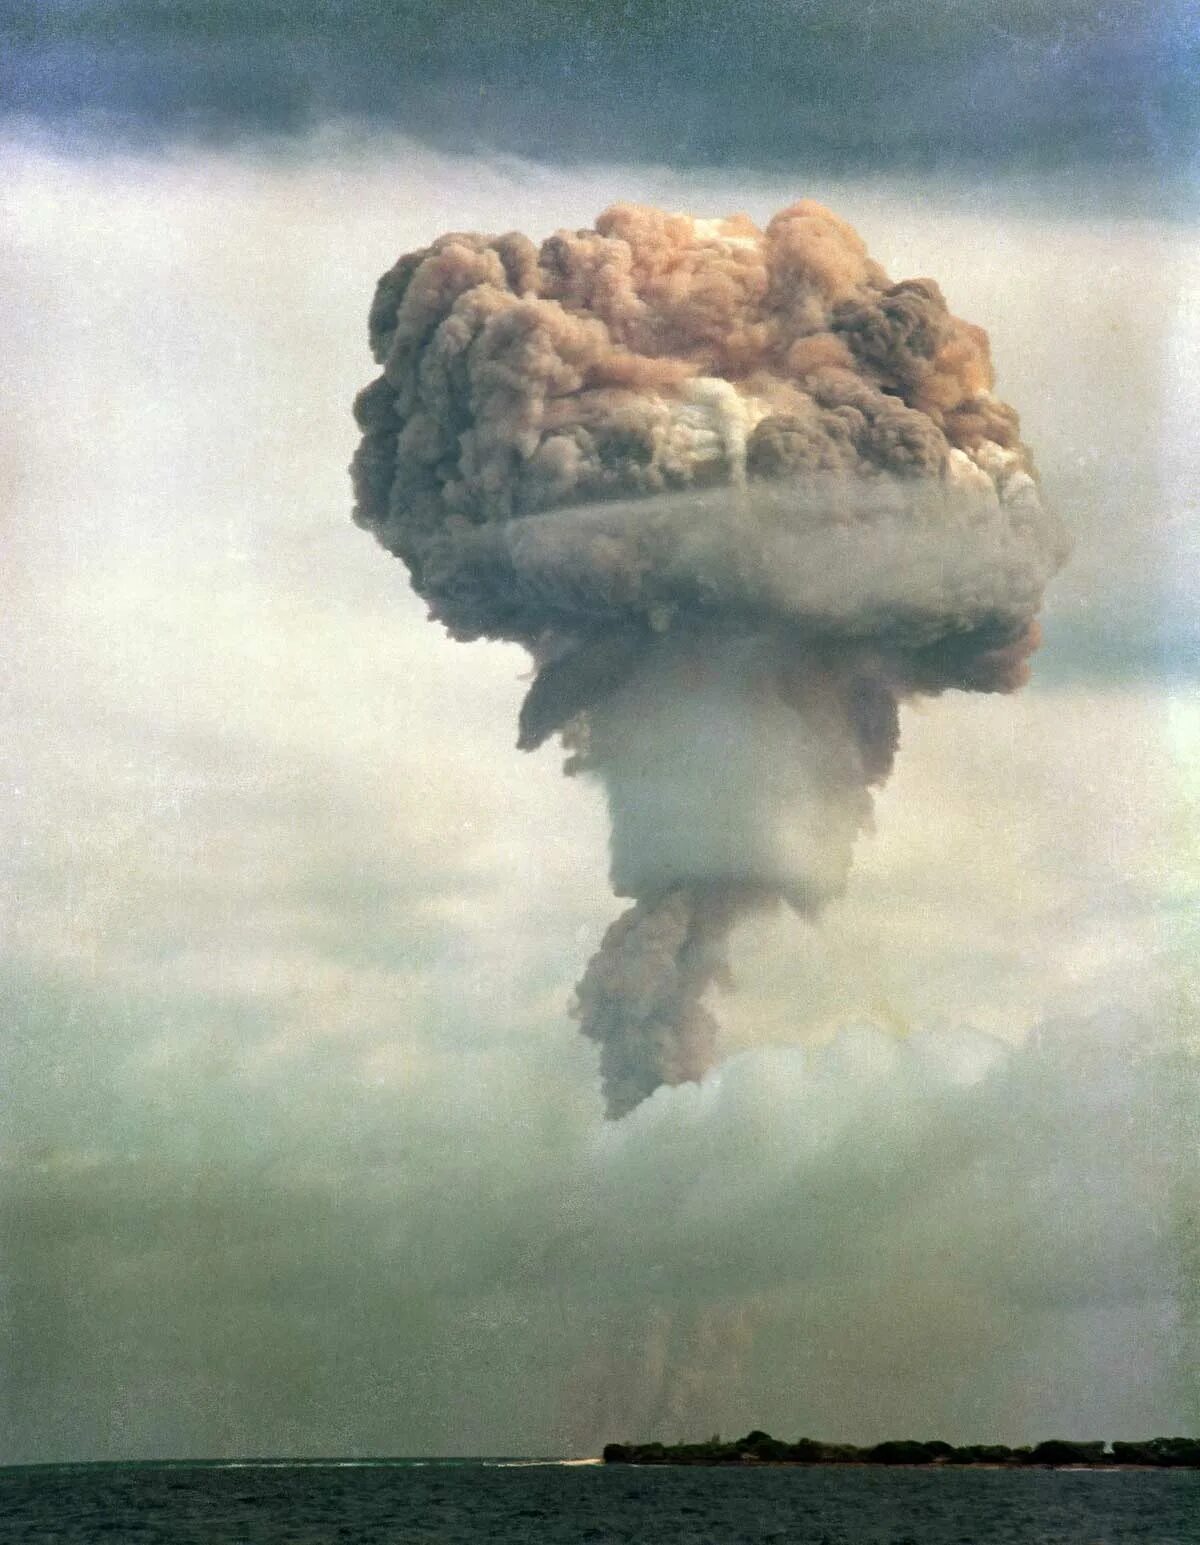 РДС 37 водородная бомба. Воздушный взрыв. Ядерный взрыв. Высотный взрыв ядерного оружия.